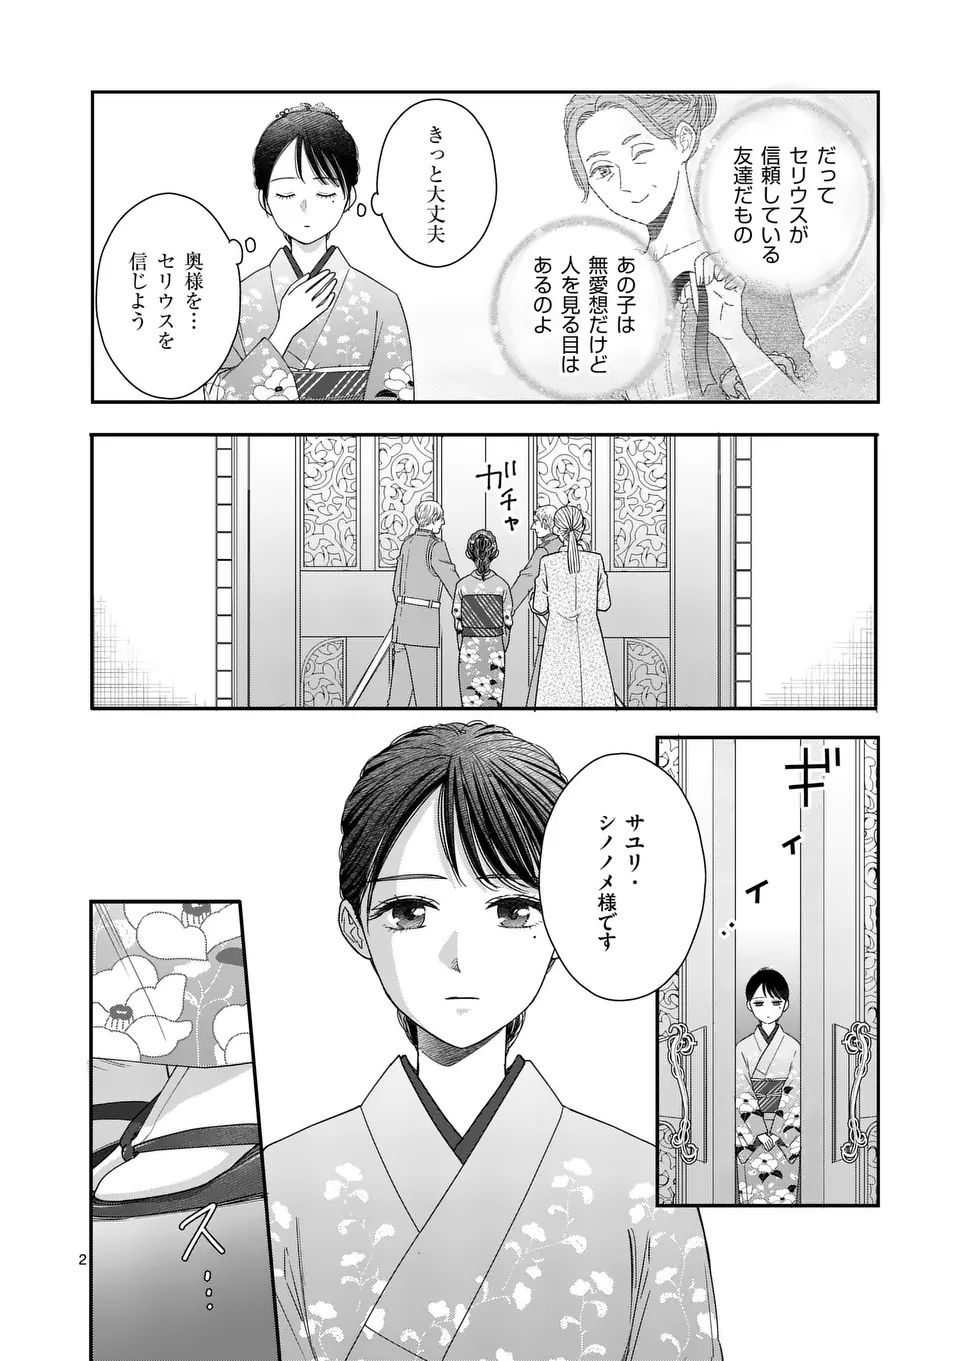 Makizoe de Isekai ni Yobidasareta no de, Sekai Kanmushi shite Wagashi Tsukurimasu - Chapter 8.1 - Page 2